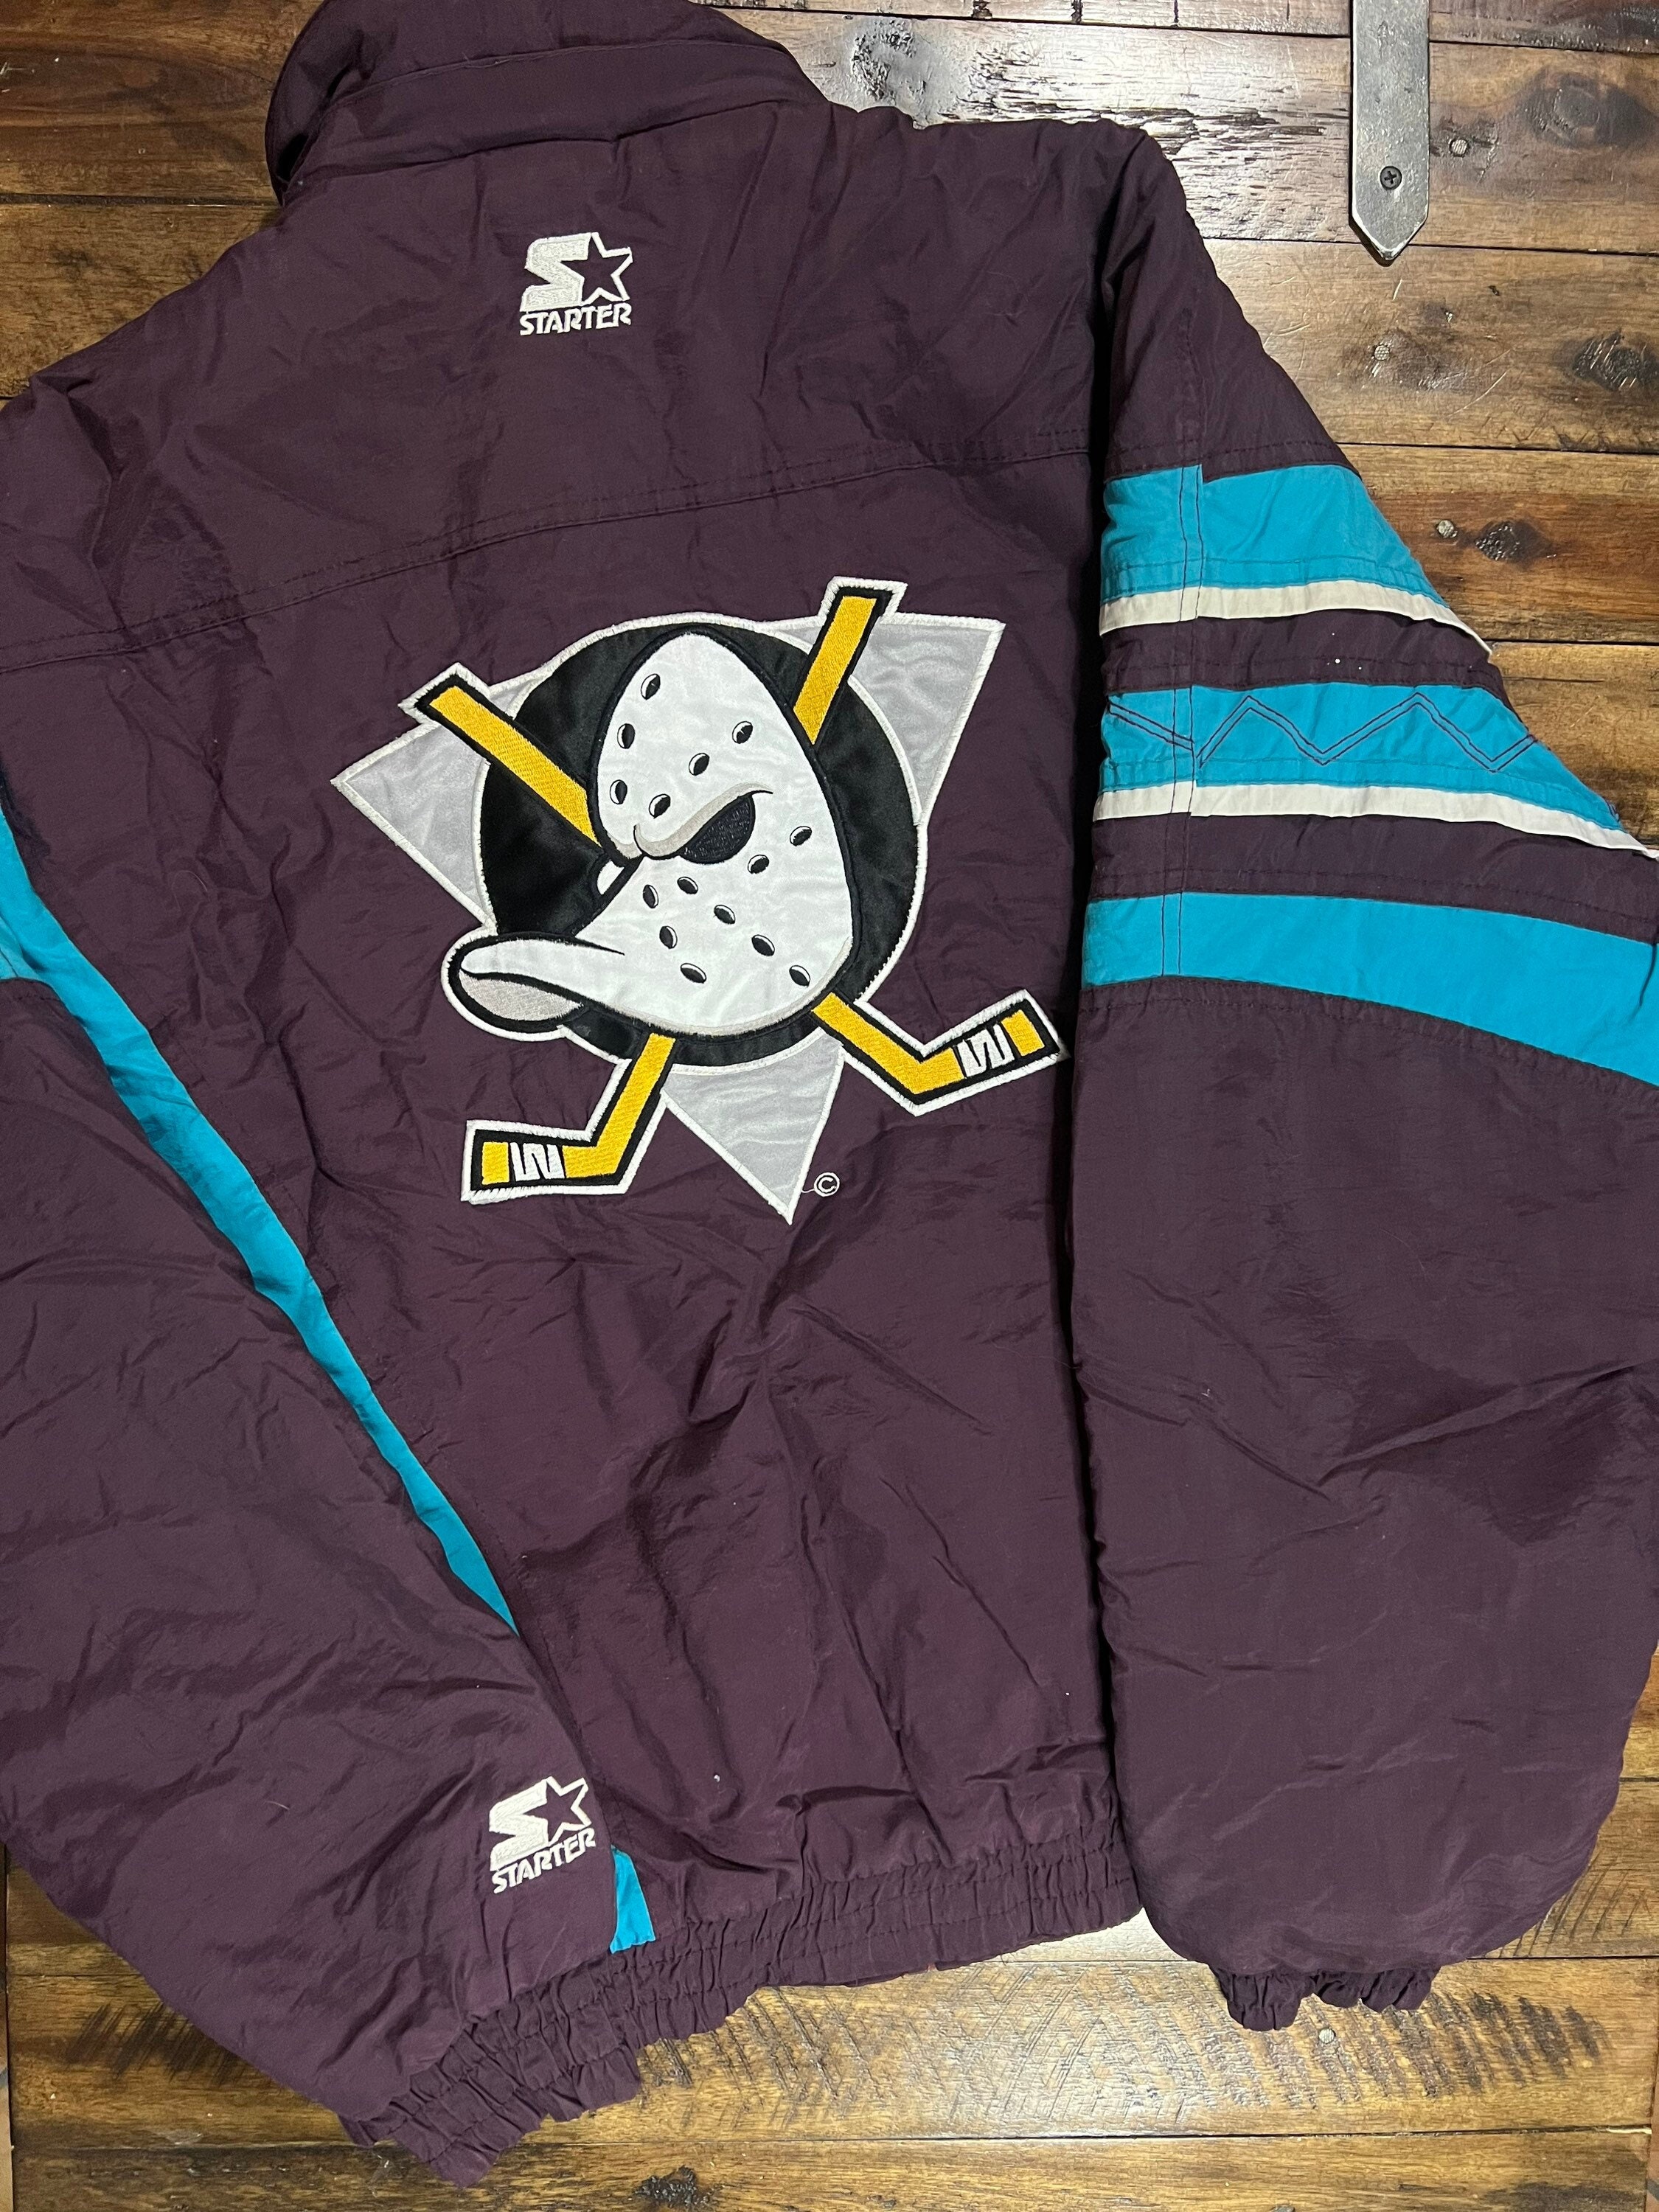 Vintage 90s Anaheim Mighty Ducks Starter Jacket 